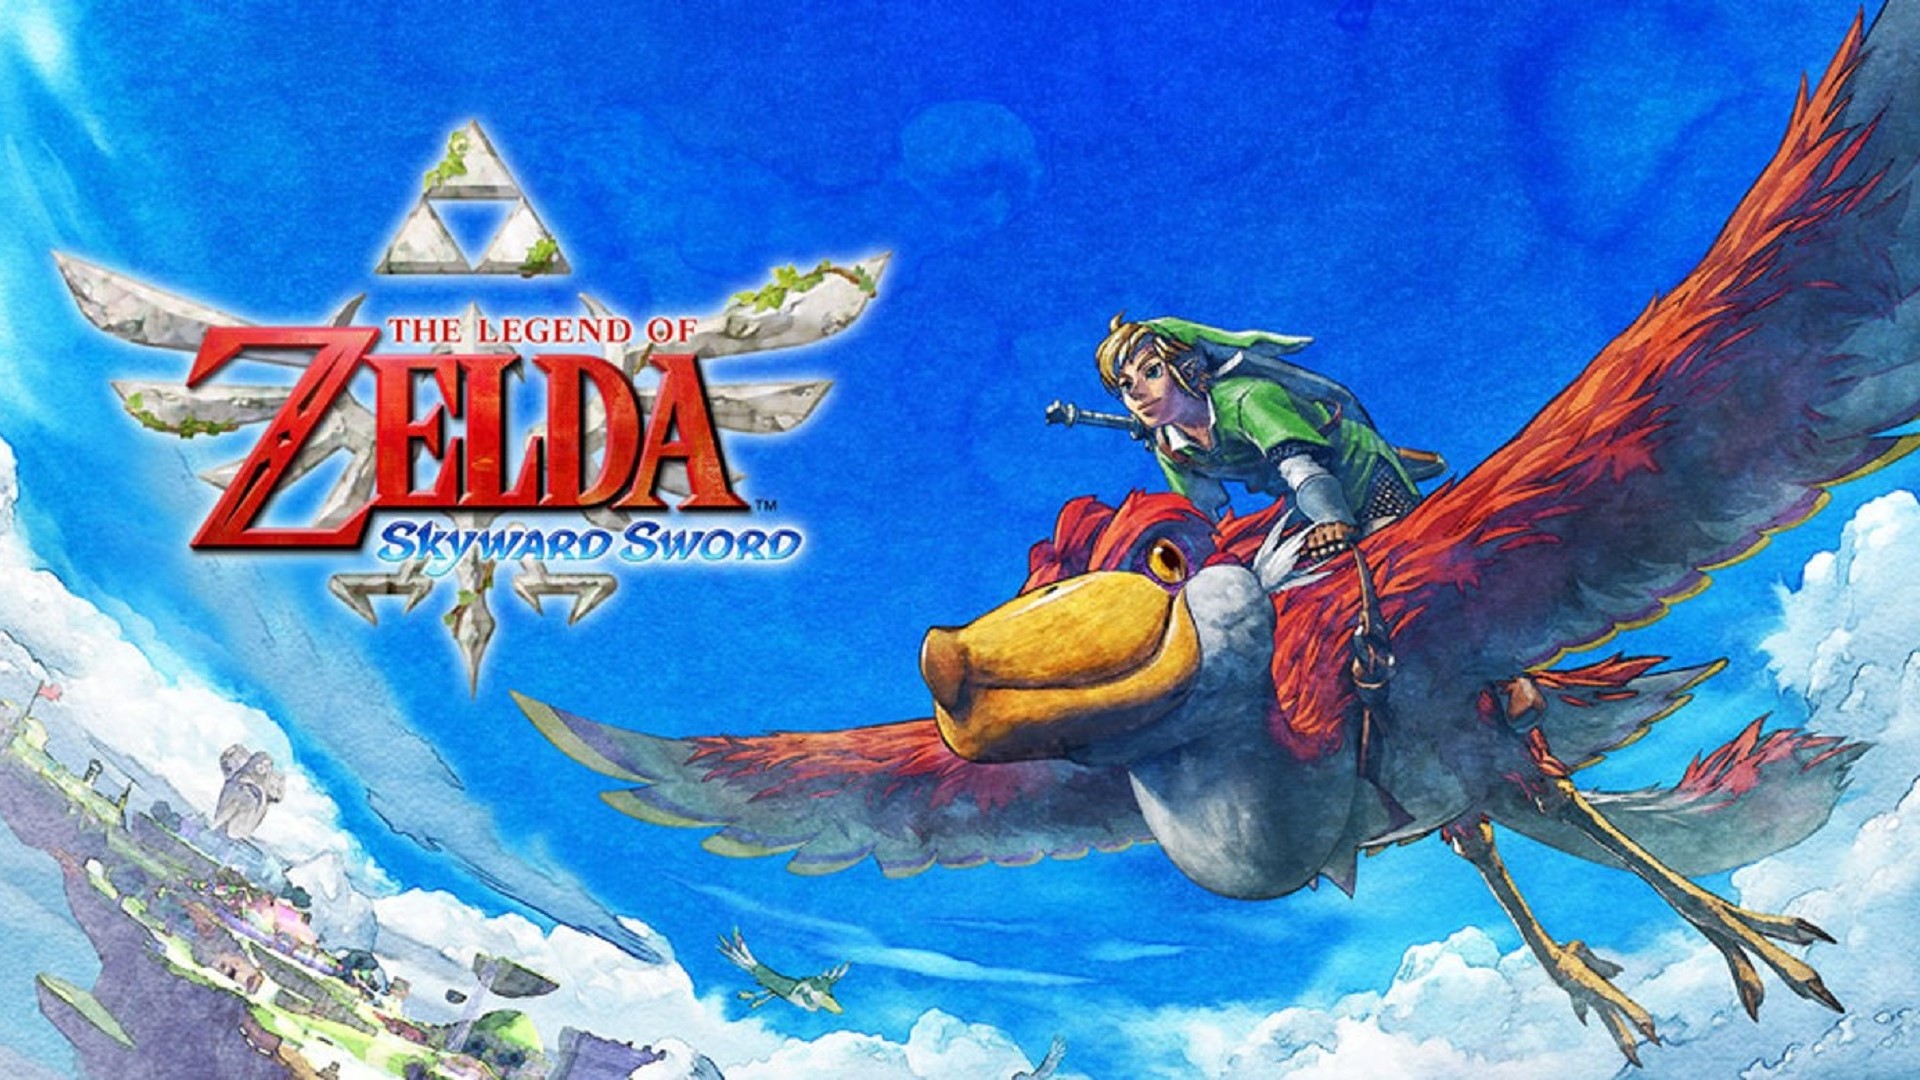 A Legenda di Zelda Skyward Sword